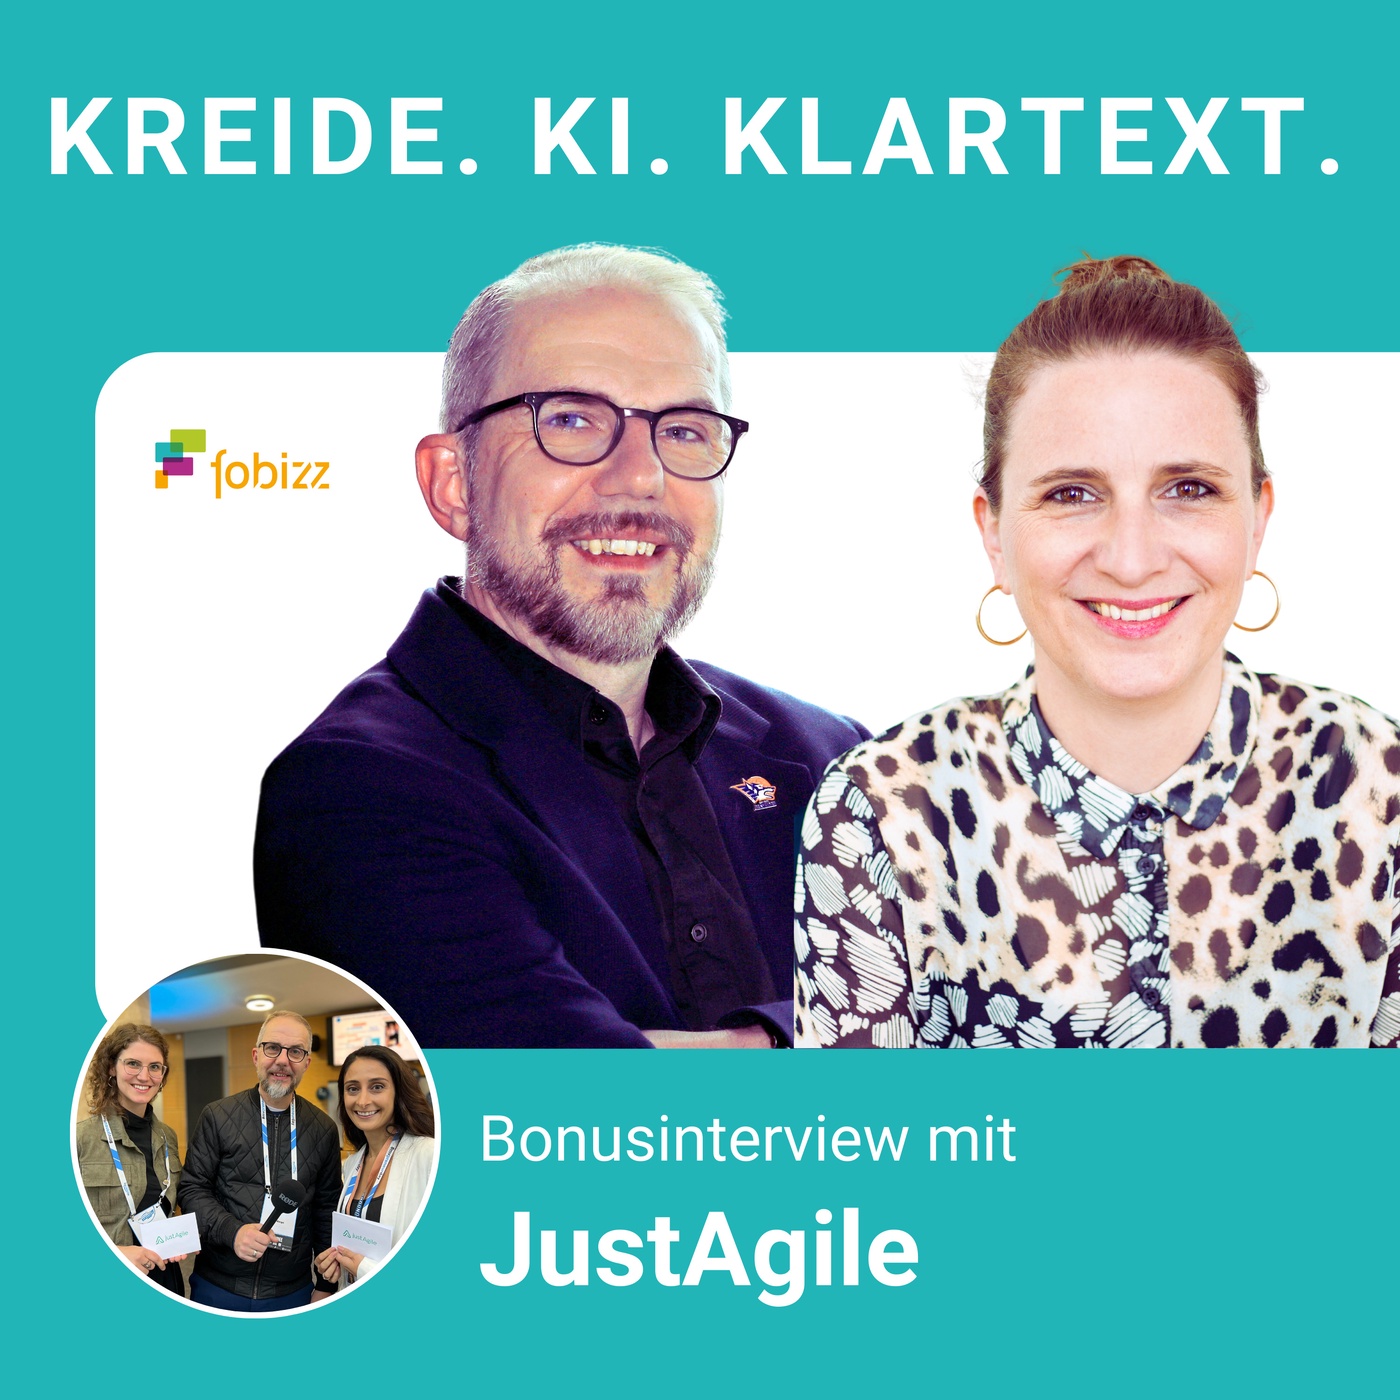 Pitch der Woche von JustAgile - Agil mit KI arbeiten